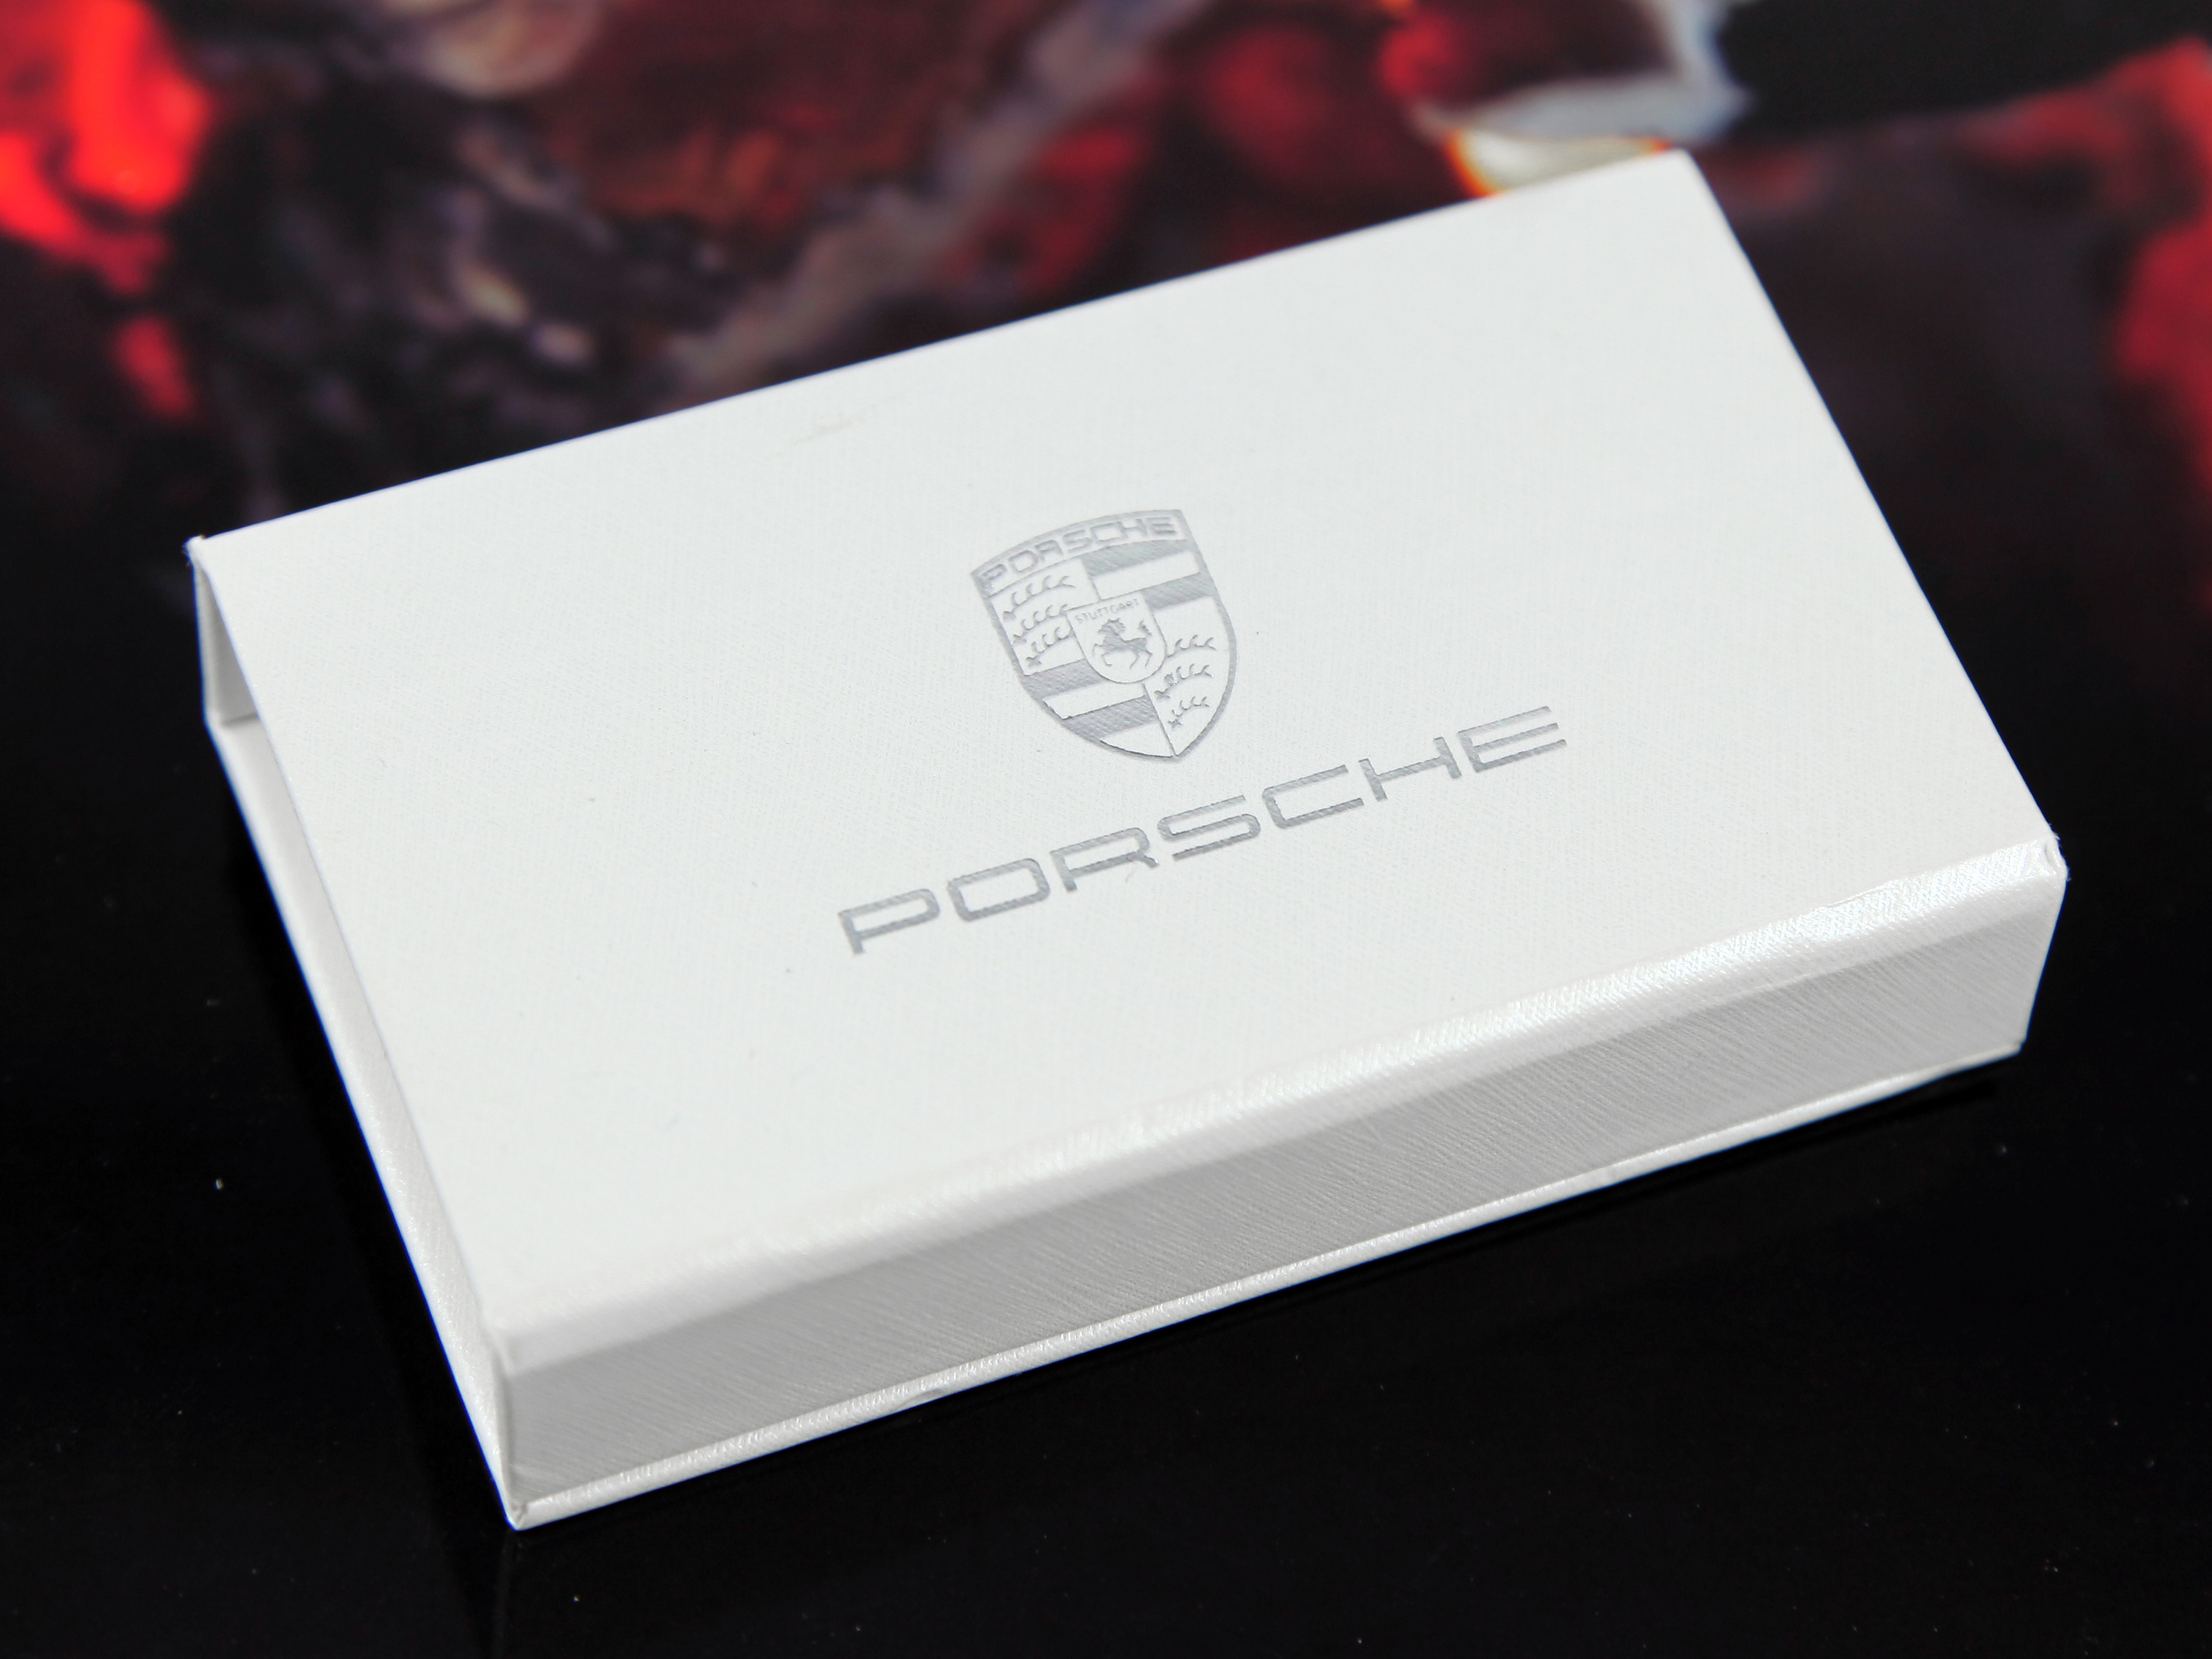 Dongle Box weiss Verpackung Porsche